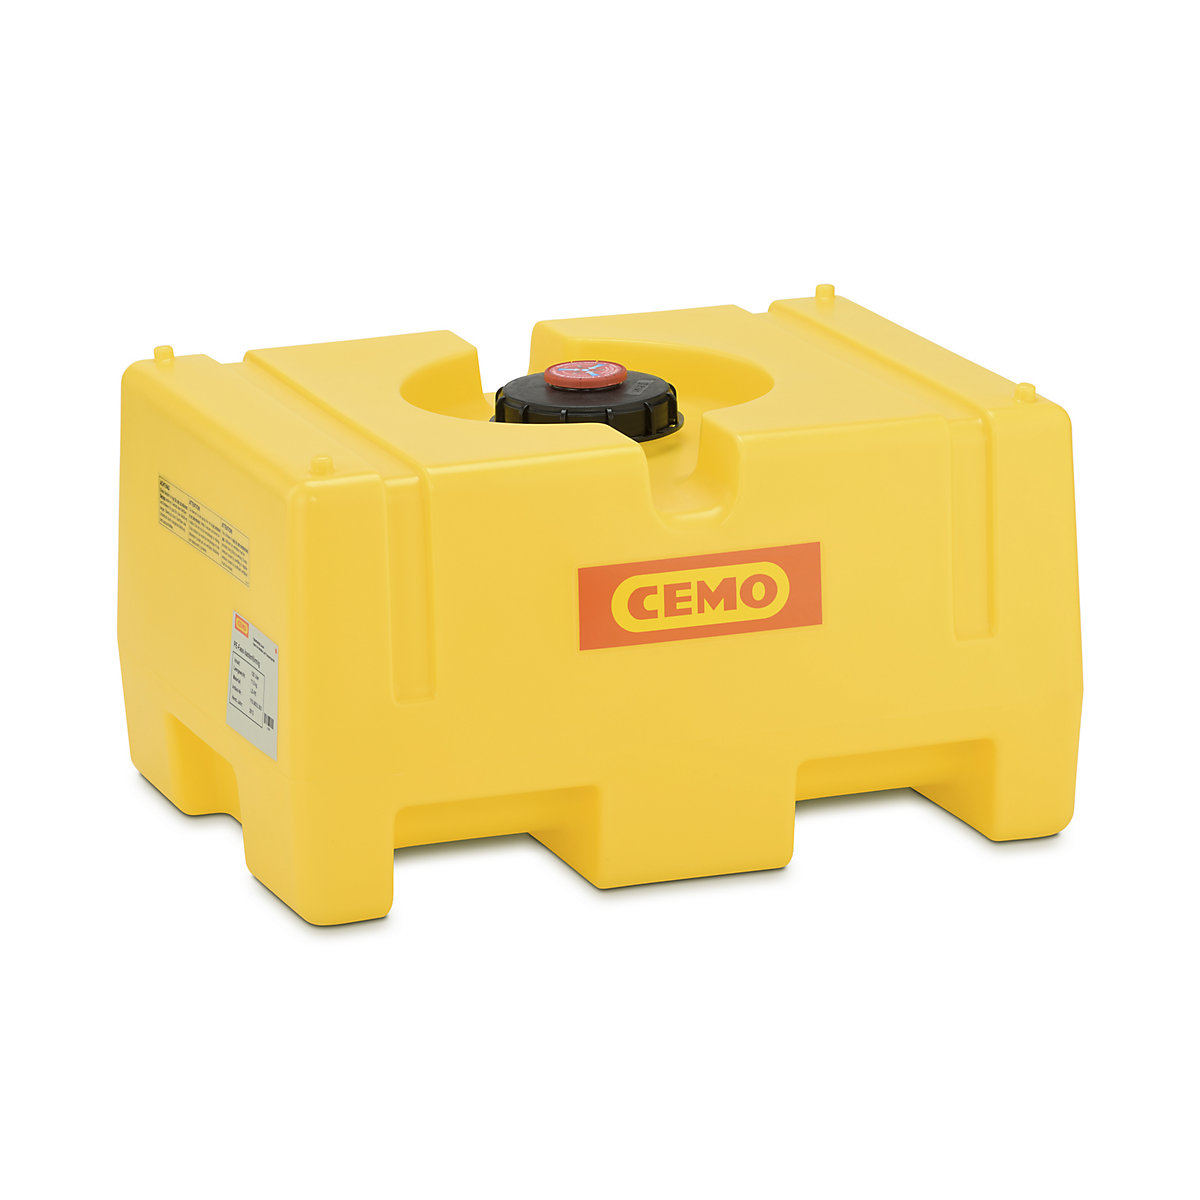 CEMO – Butoi din PE pentru apă, sub formă de cutie, galben, butoi PE, sub formă de cutie 125 l